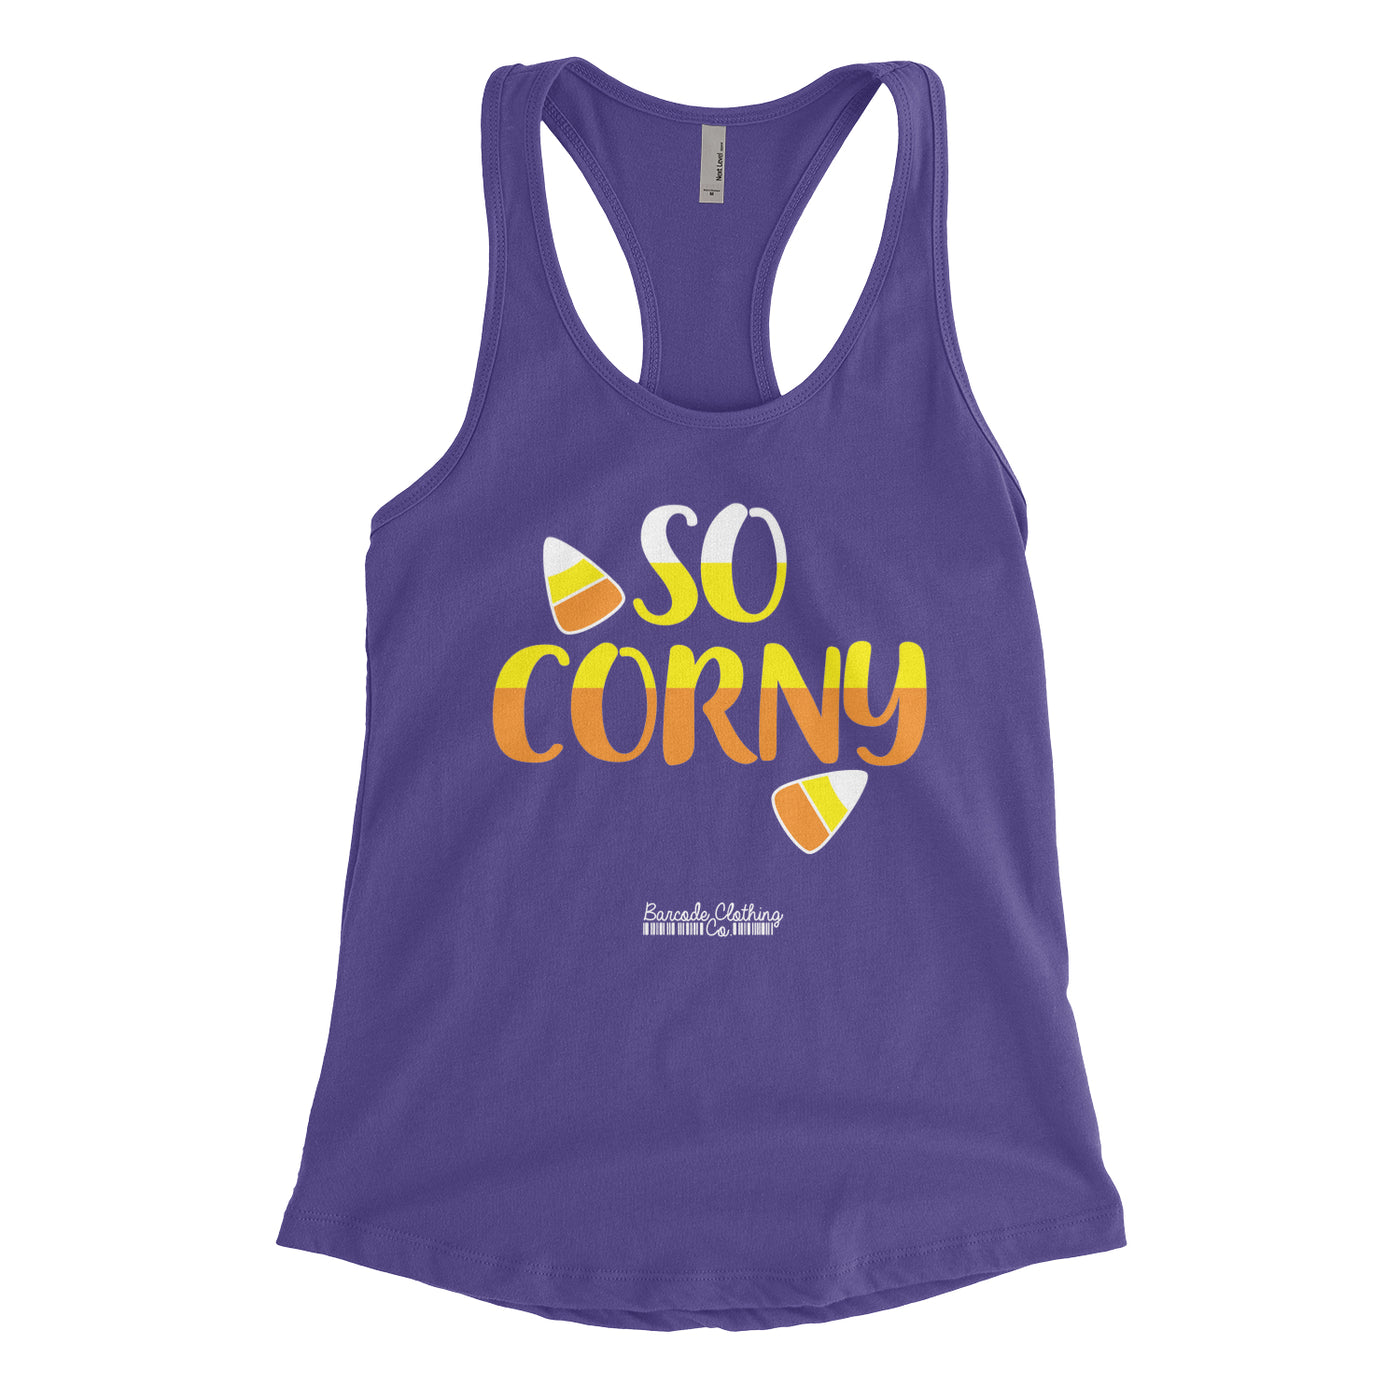 So Corny